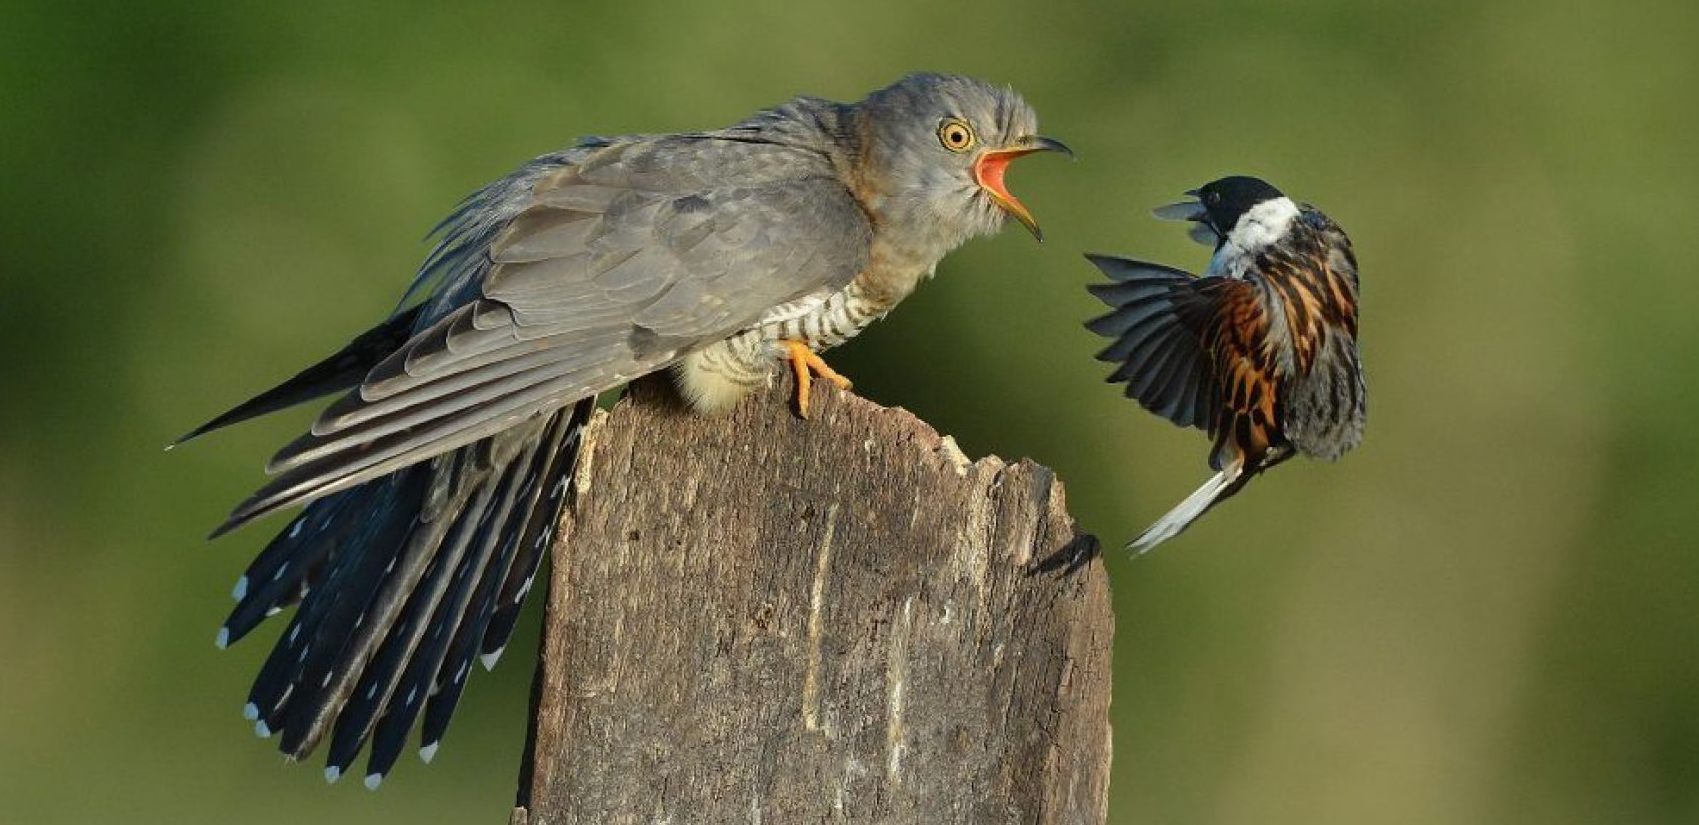 Cuckoo defending, journal of wild culture, ©2020